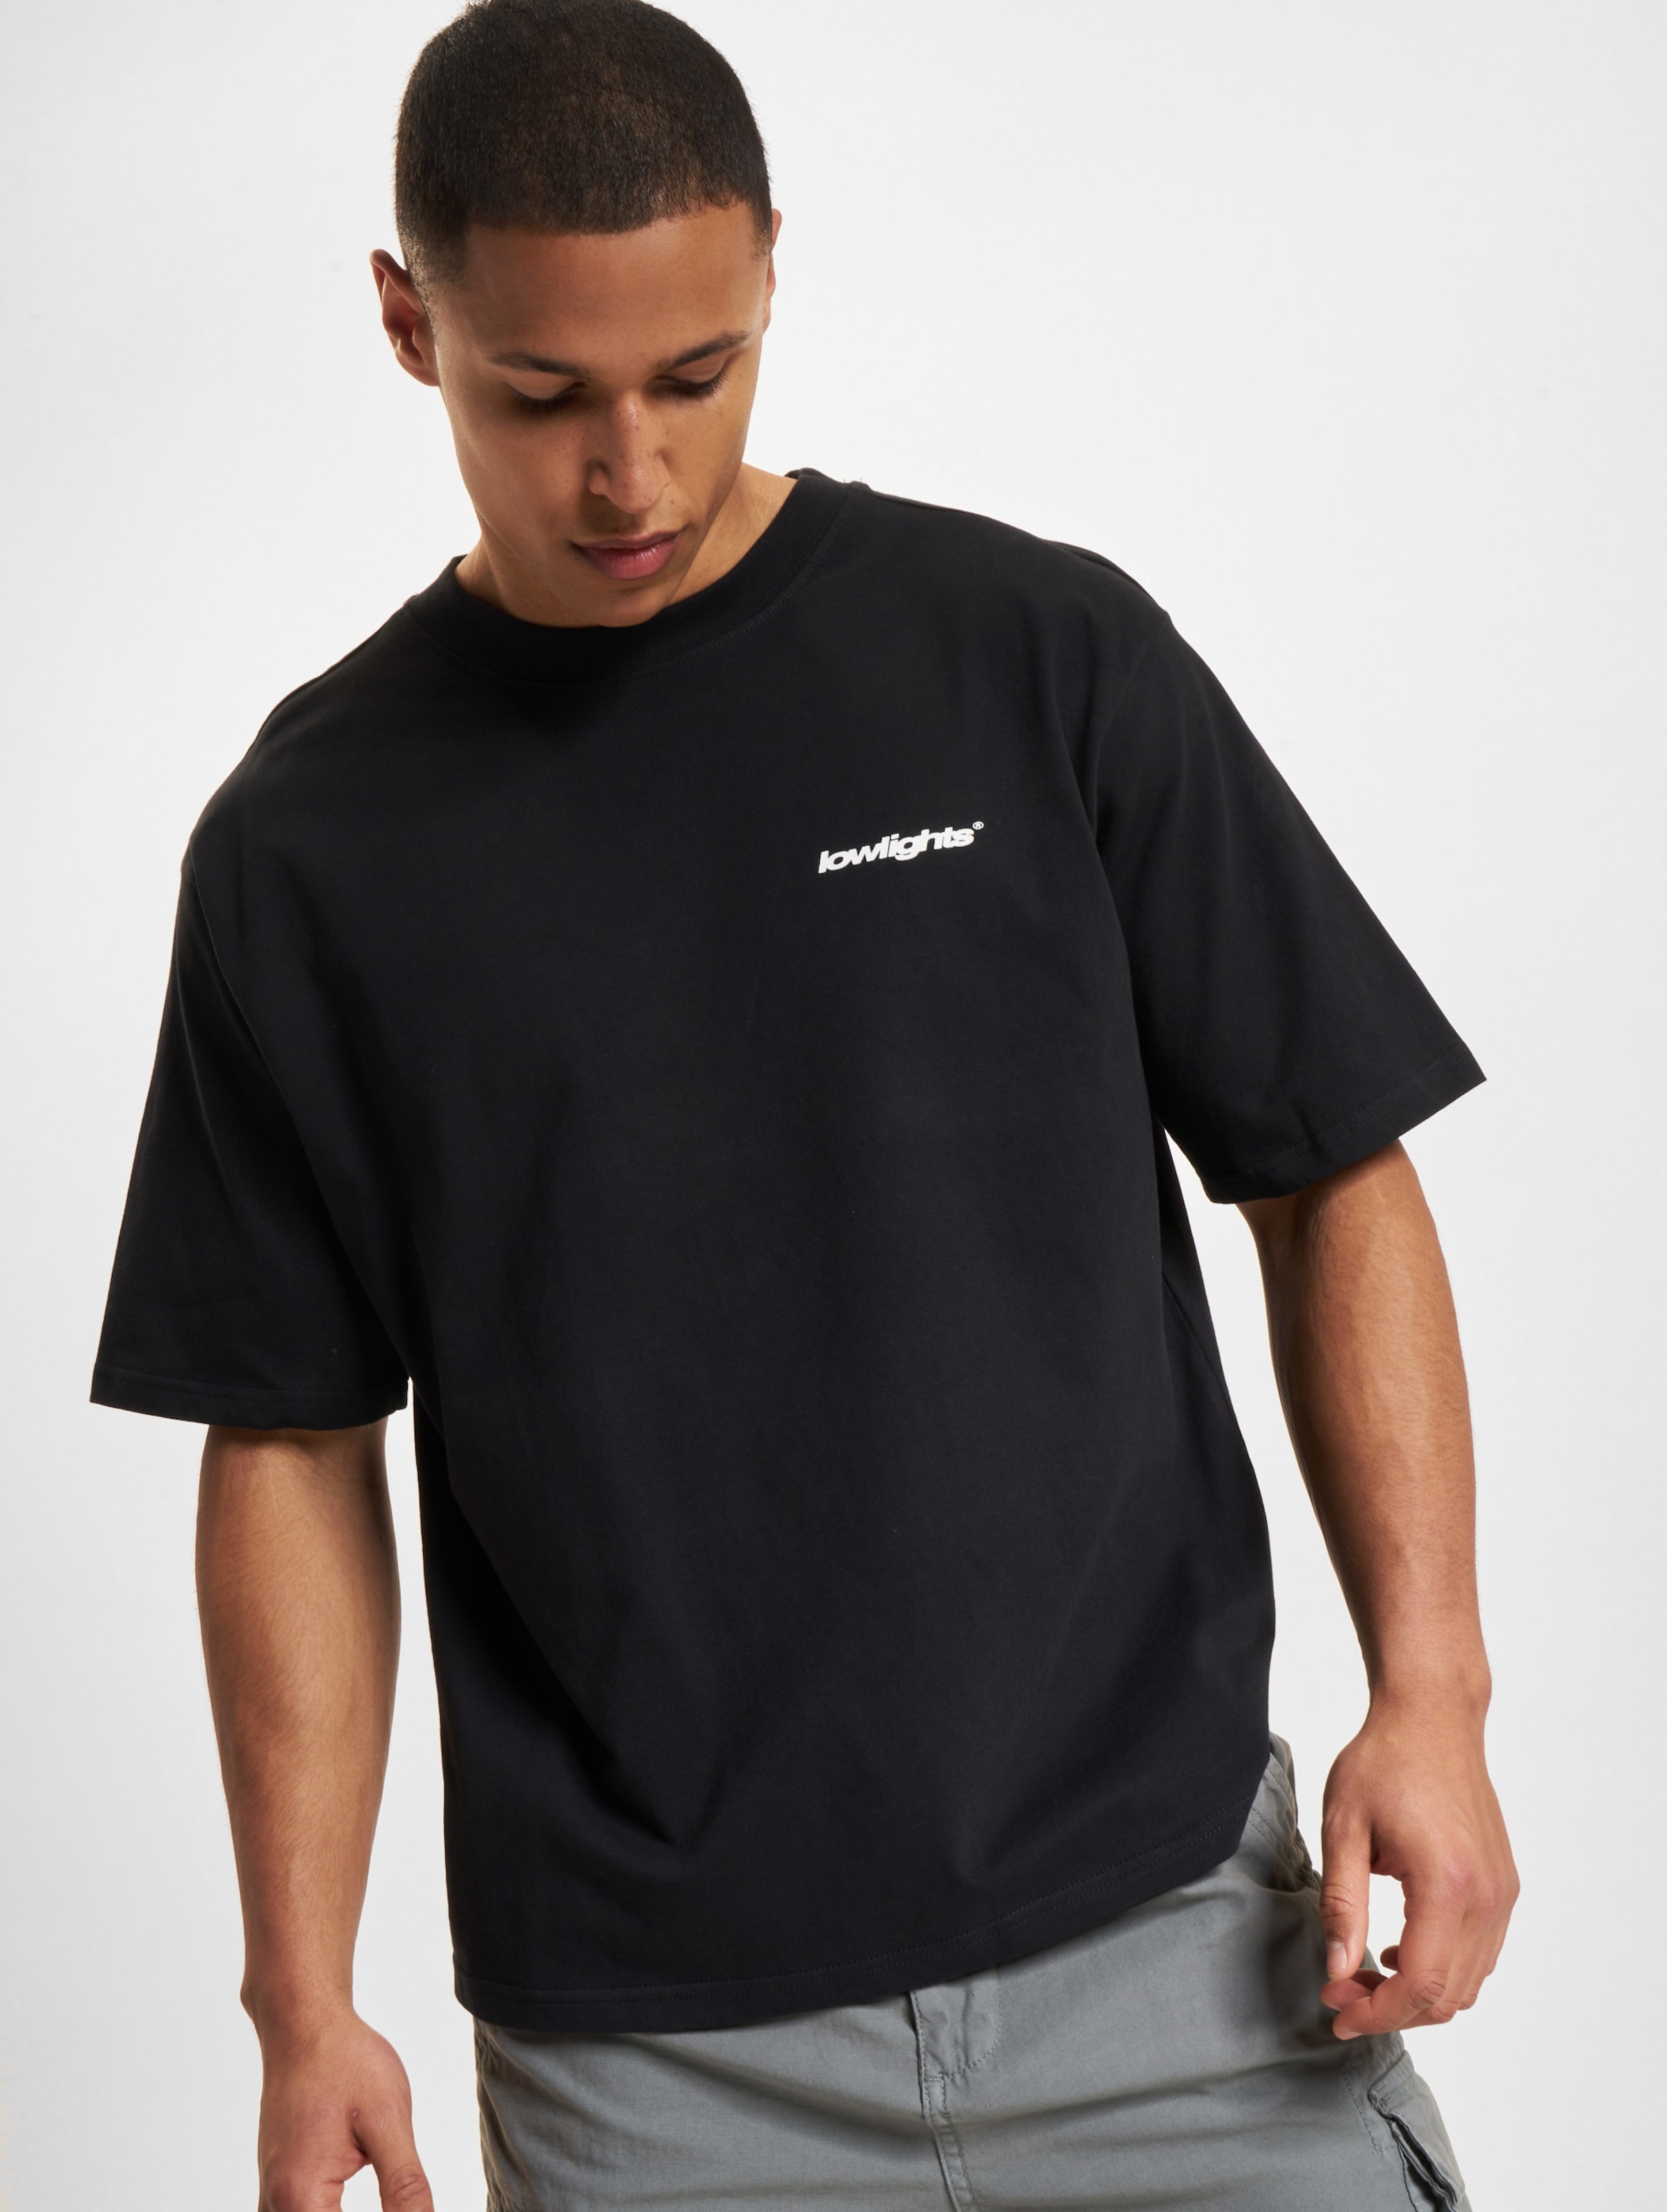 Low Lights Studios Basic T-Shirt black Männer,Unisex op kleur zwart, Maat S